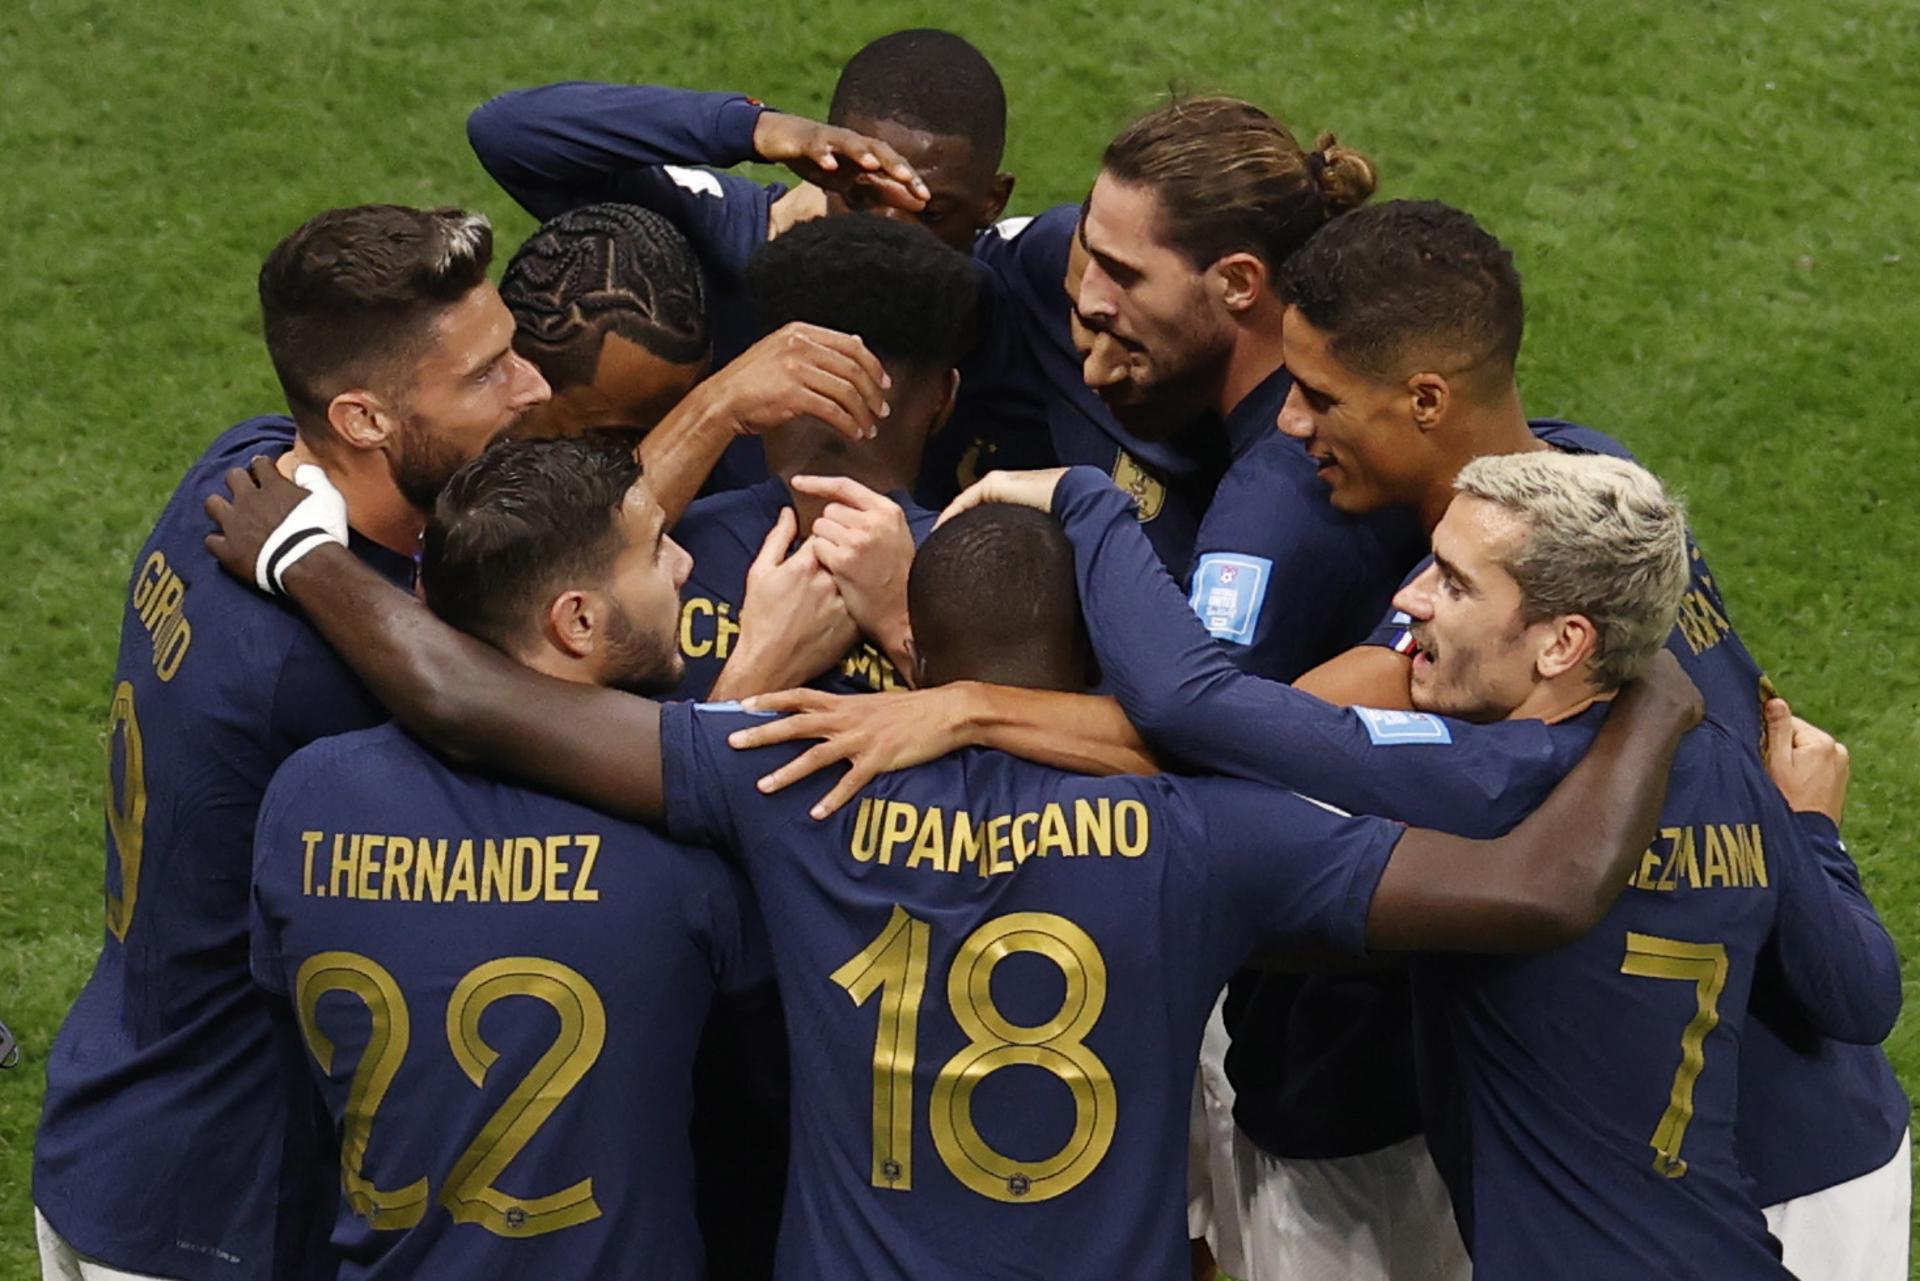 Grande favorita da Copa 2022, seleção francesa é derrotada após 20 jogos -  03/06/2022 - UOL Esporte